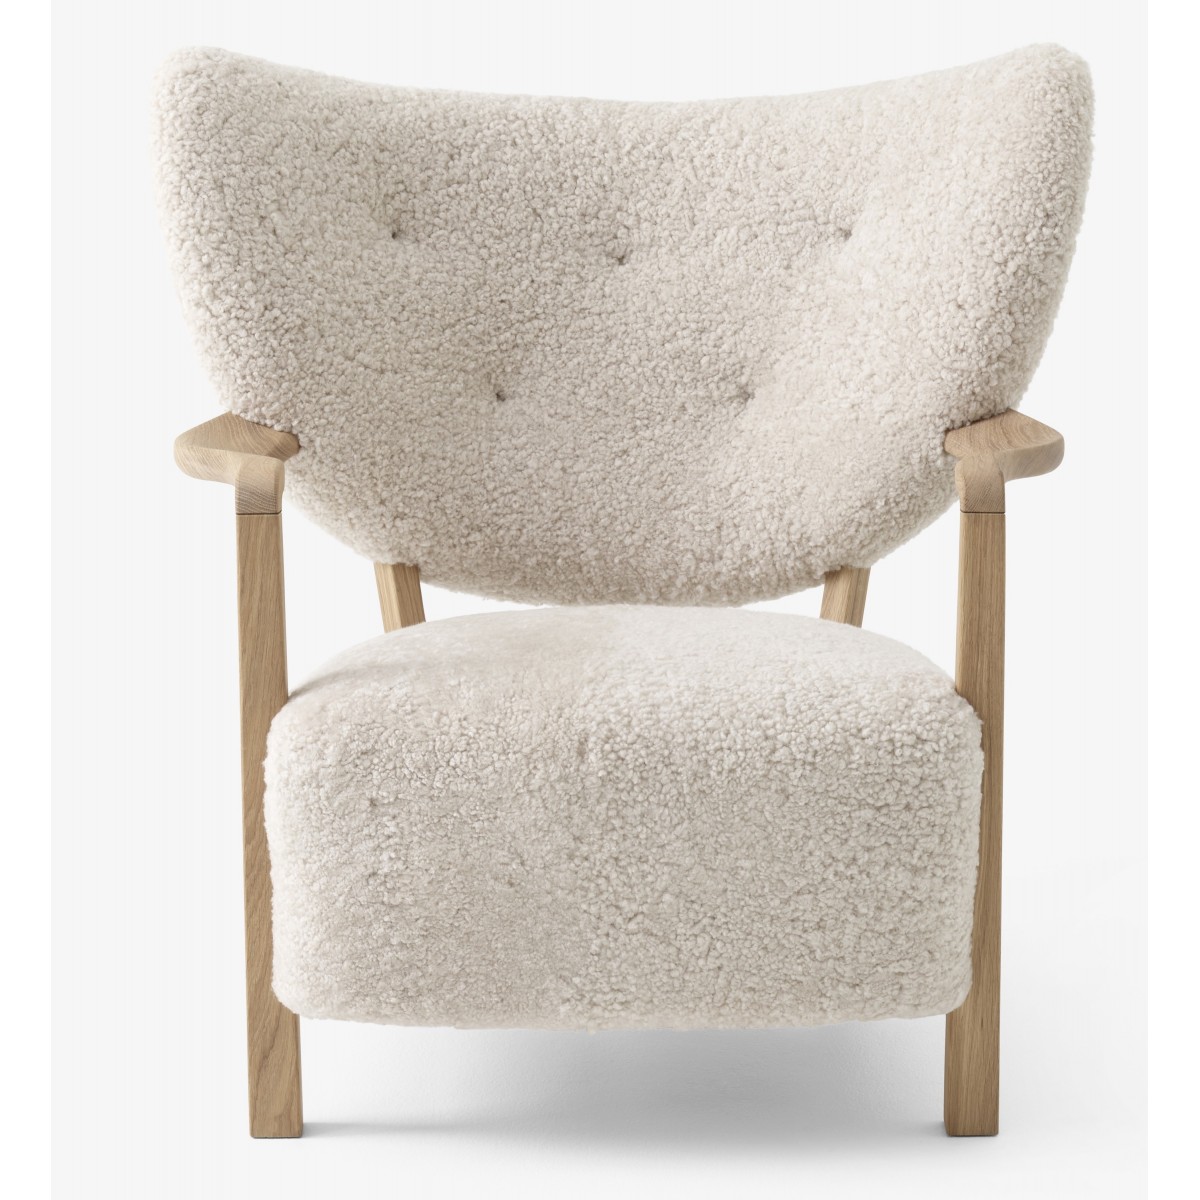 oiled oak - sheepskin moonlight 17mm - Wulff Lounge Chair